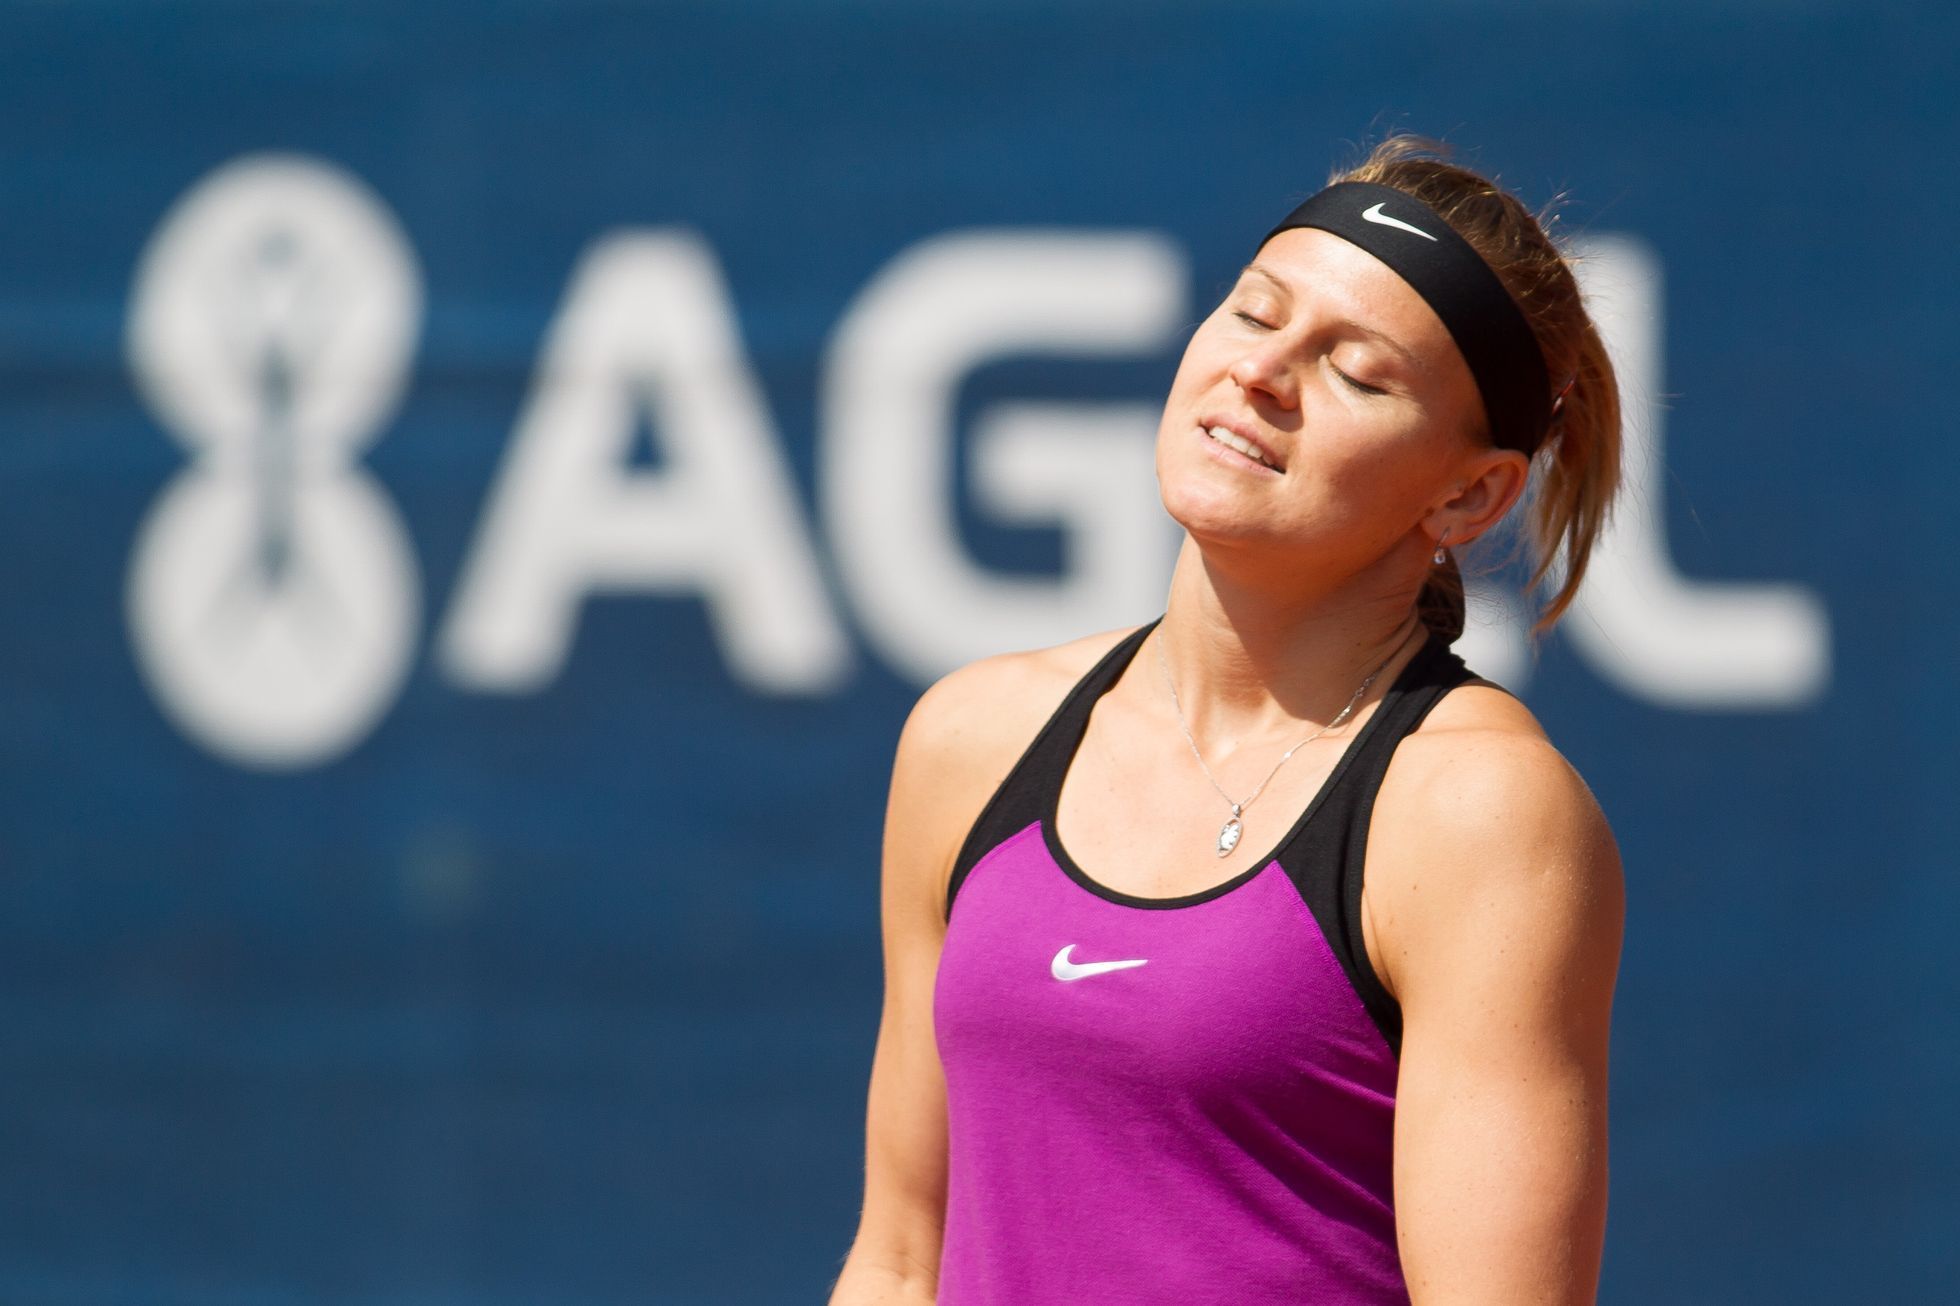 Lucie Šáfářová - Samantha Stosurová, Prague Open 2016 finále